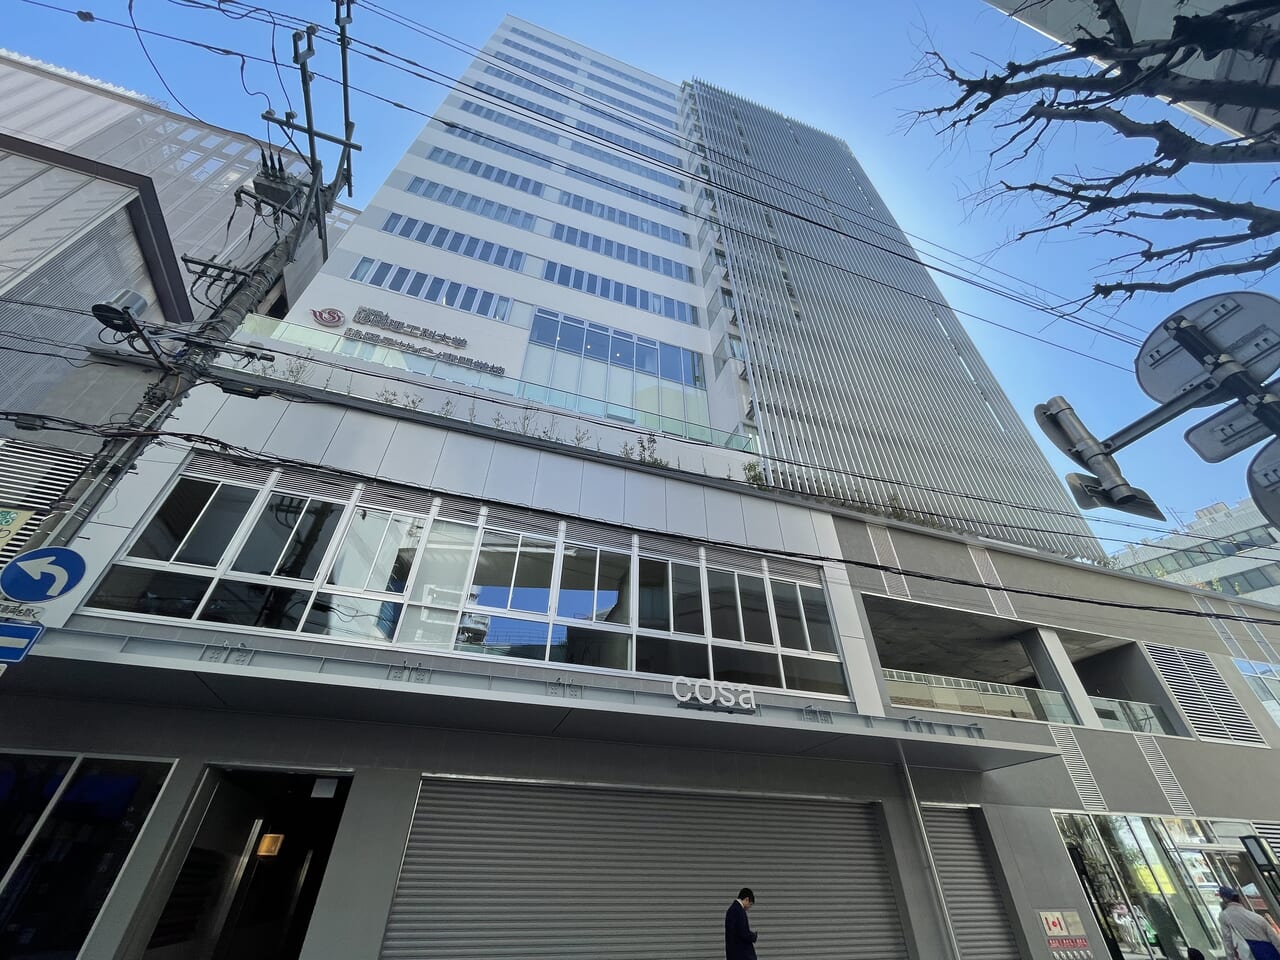 高層・商業施設ビルM20 cosaが静岡駅北口に開業